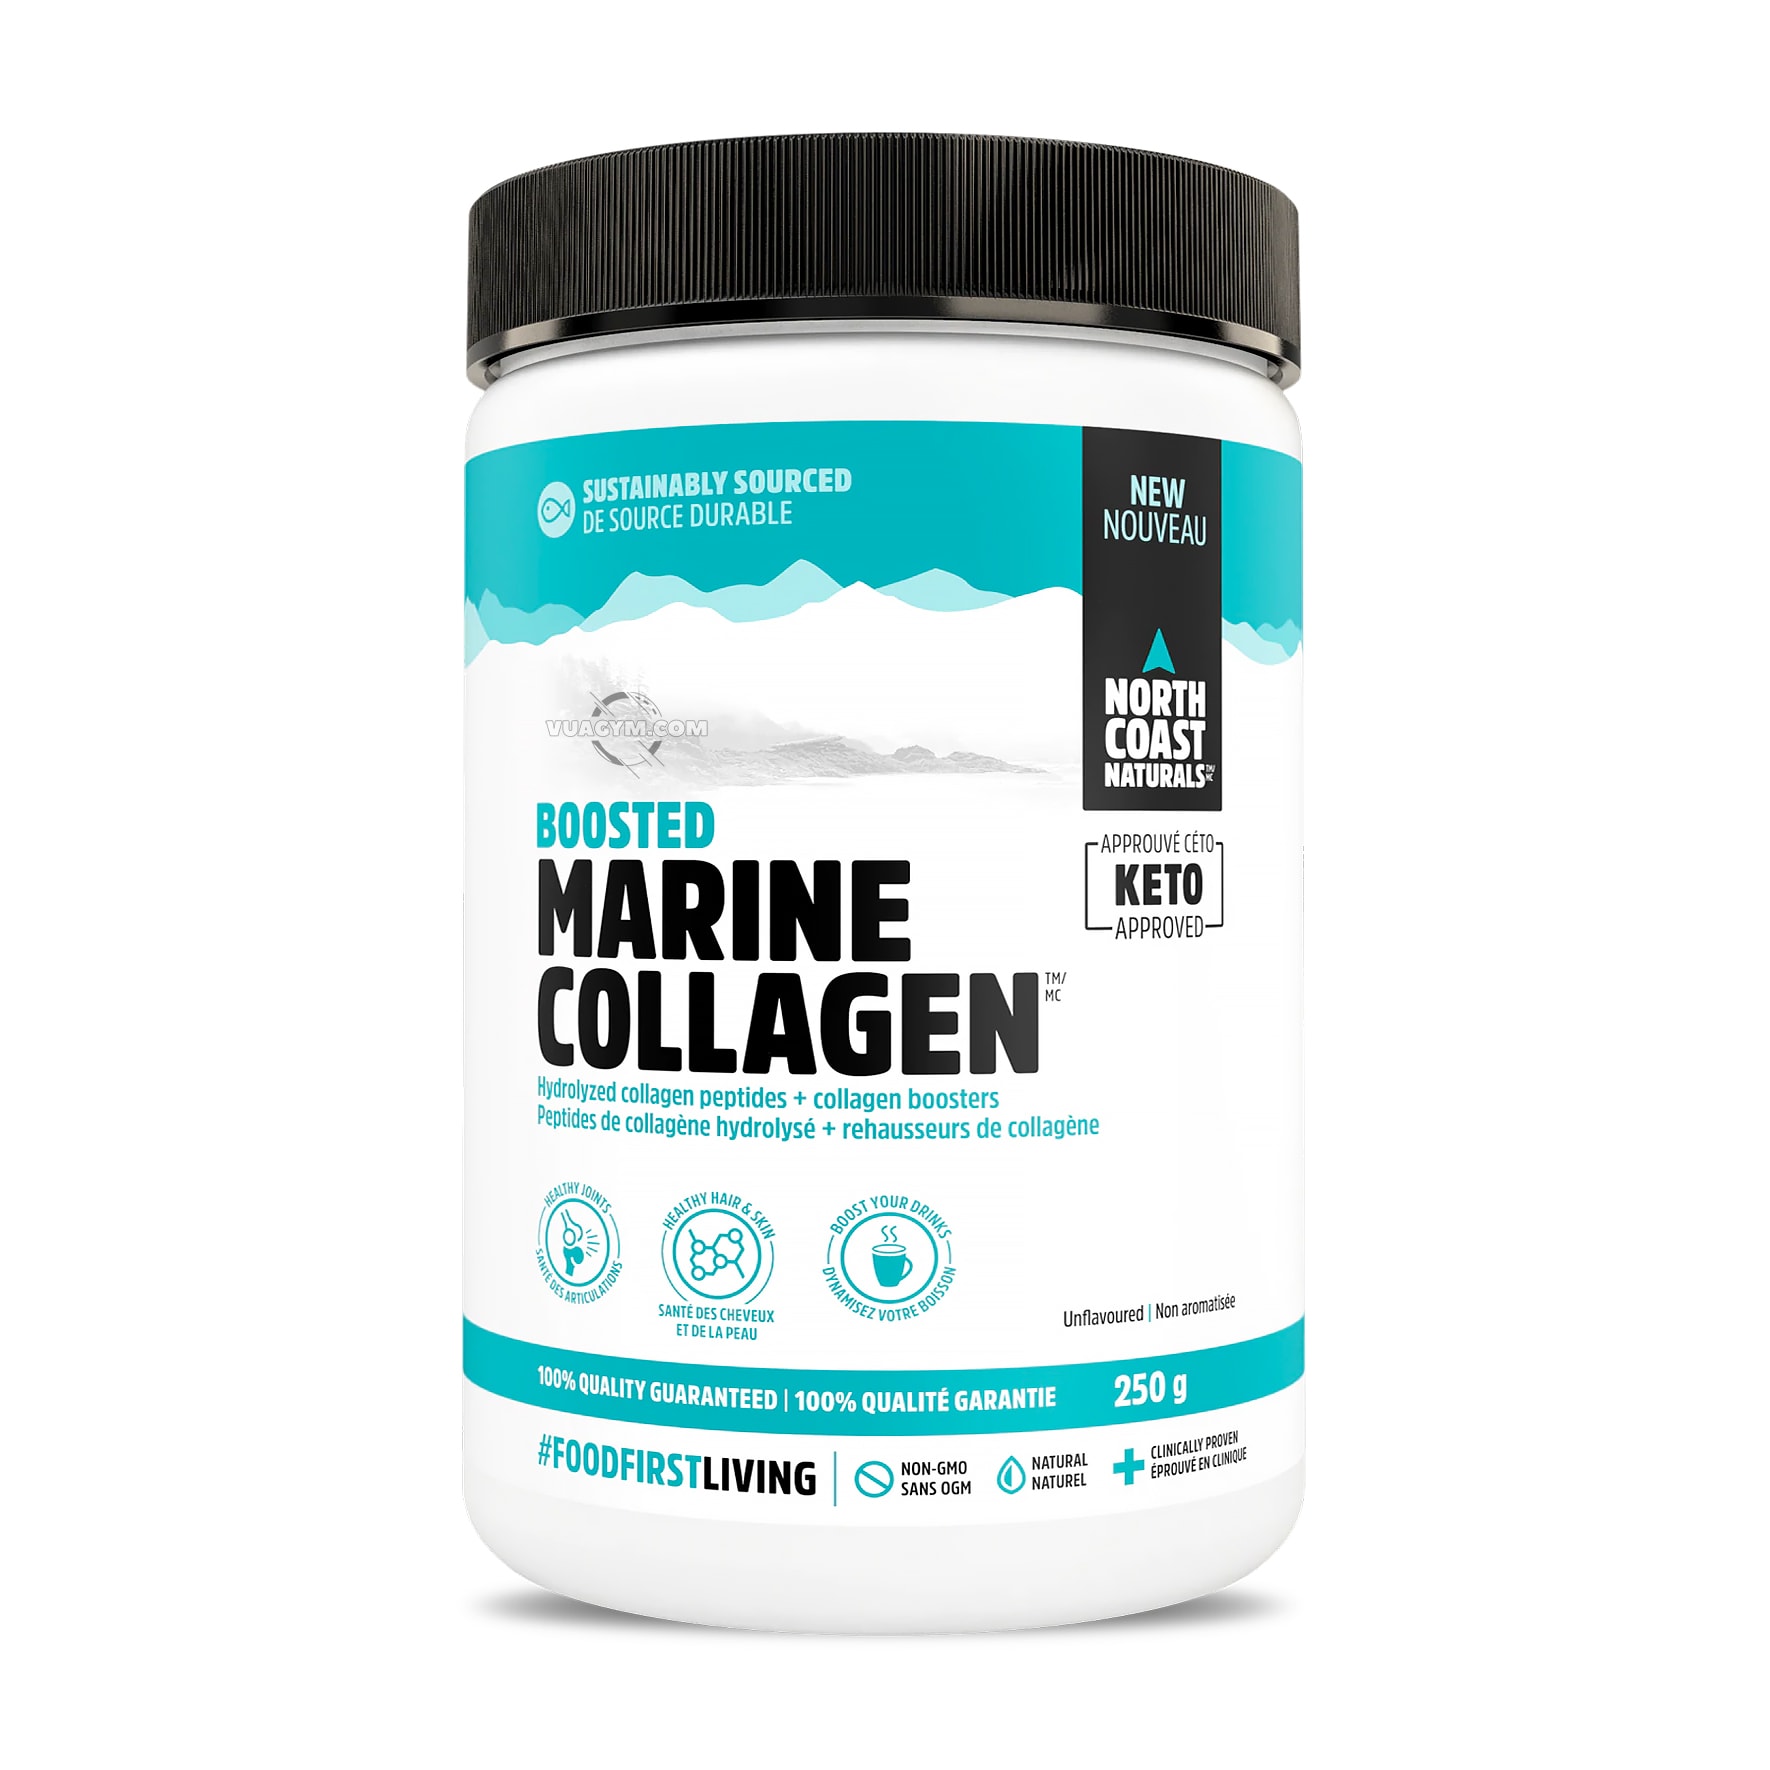 Nguồn gốc của Boosted Marine Collagen từ đâu?
